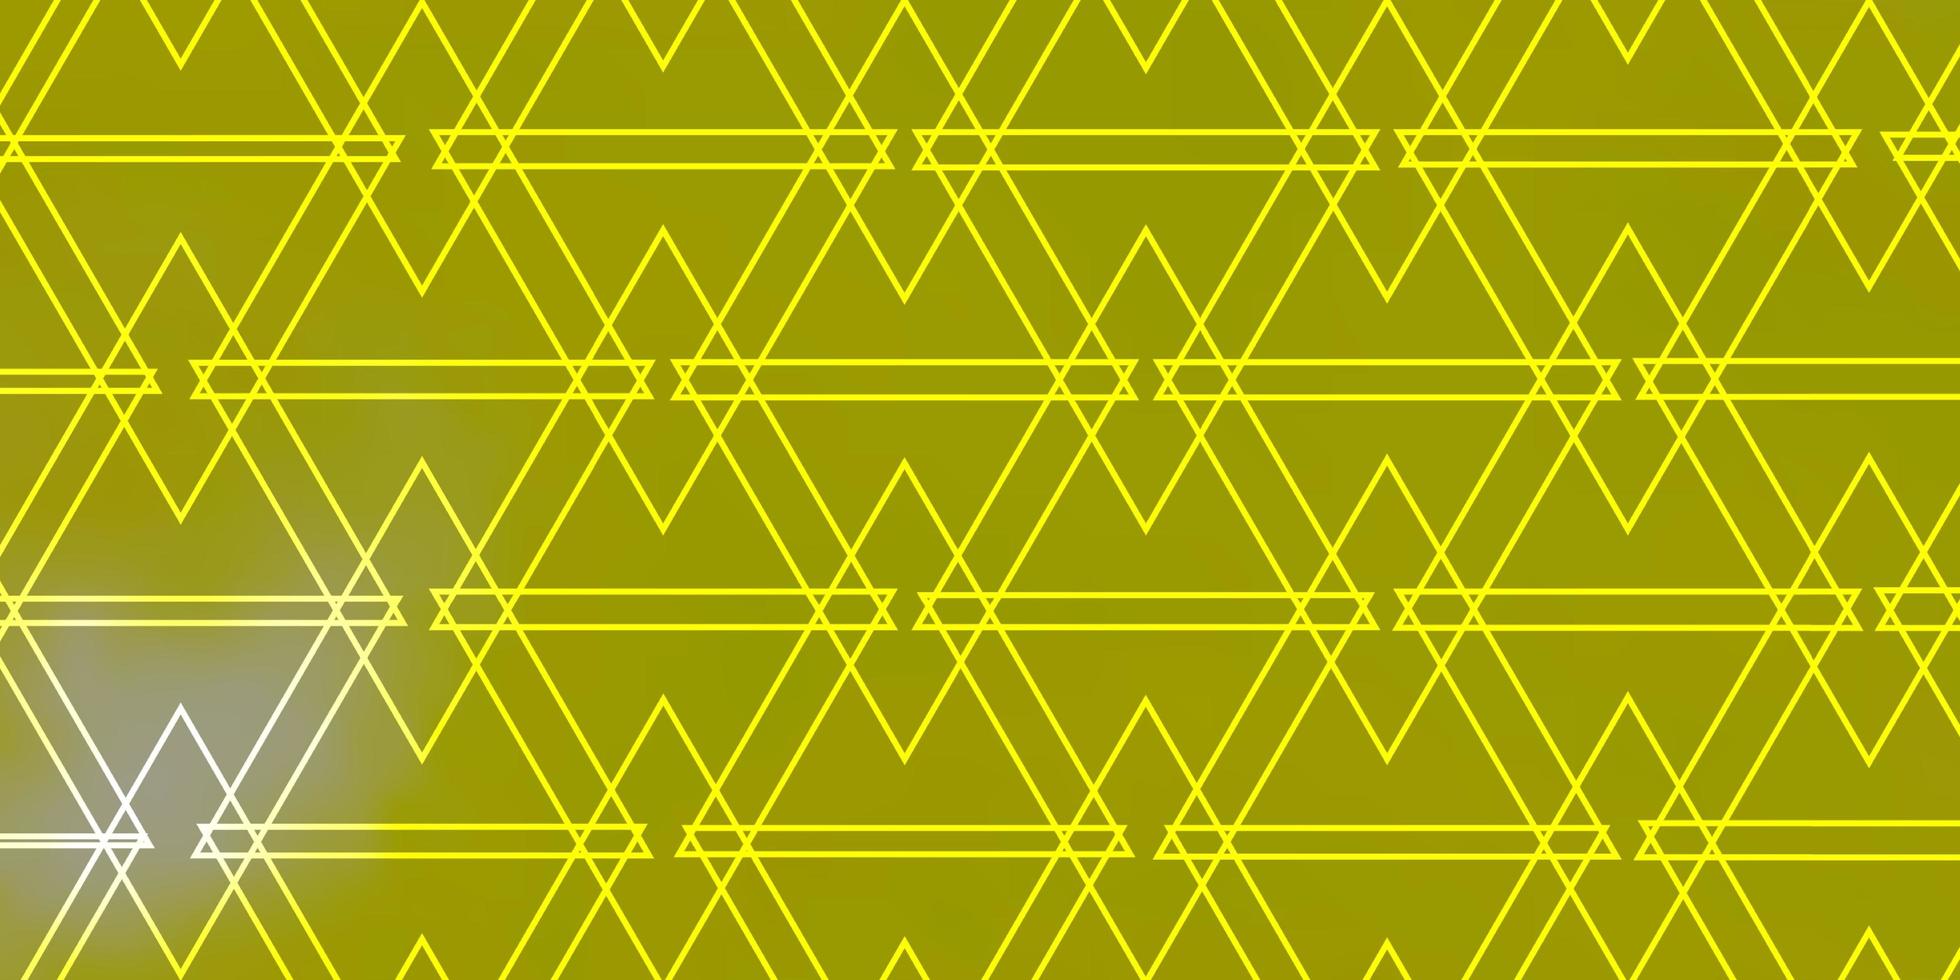 sfondo vettoriale giallo chiaro con triangoli.